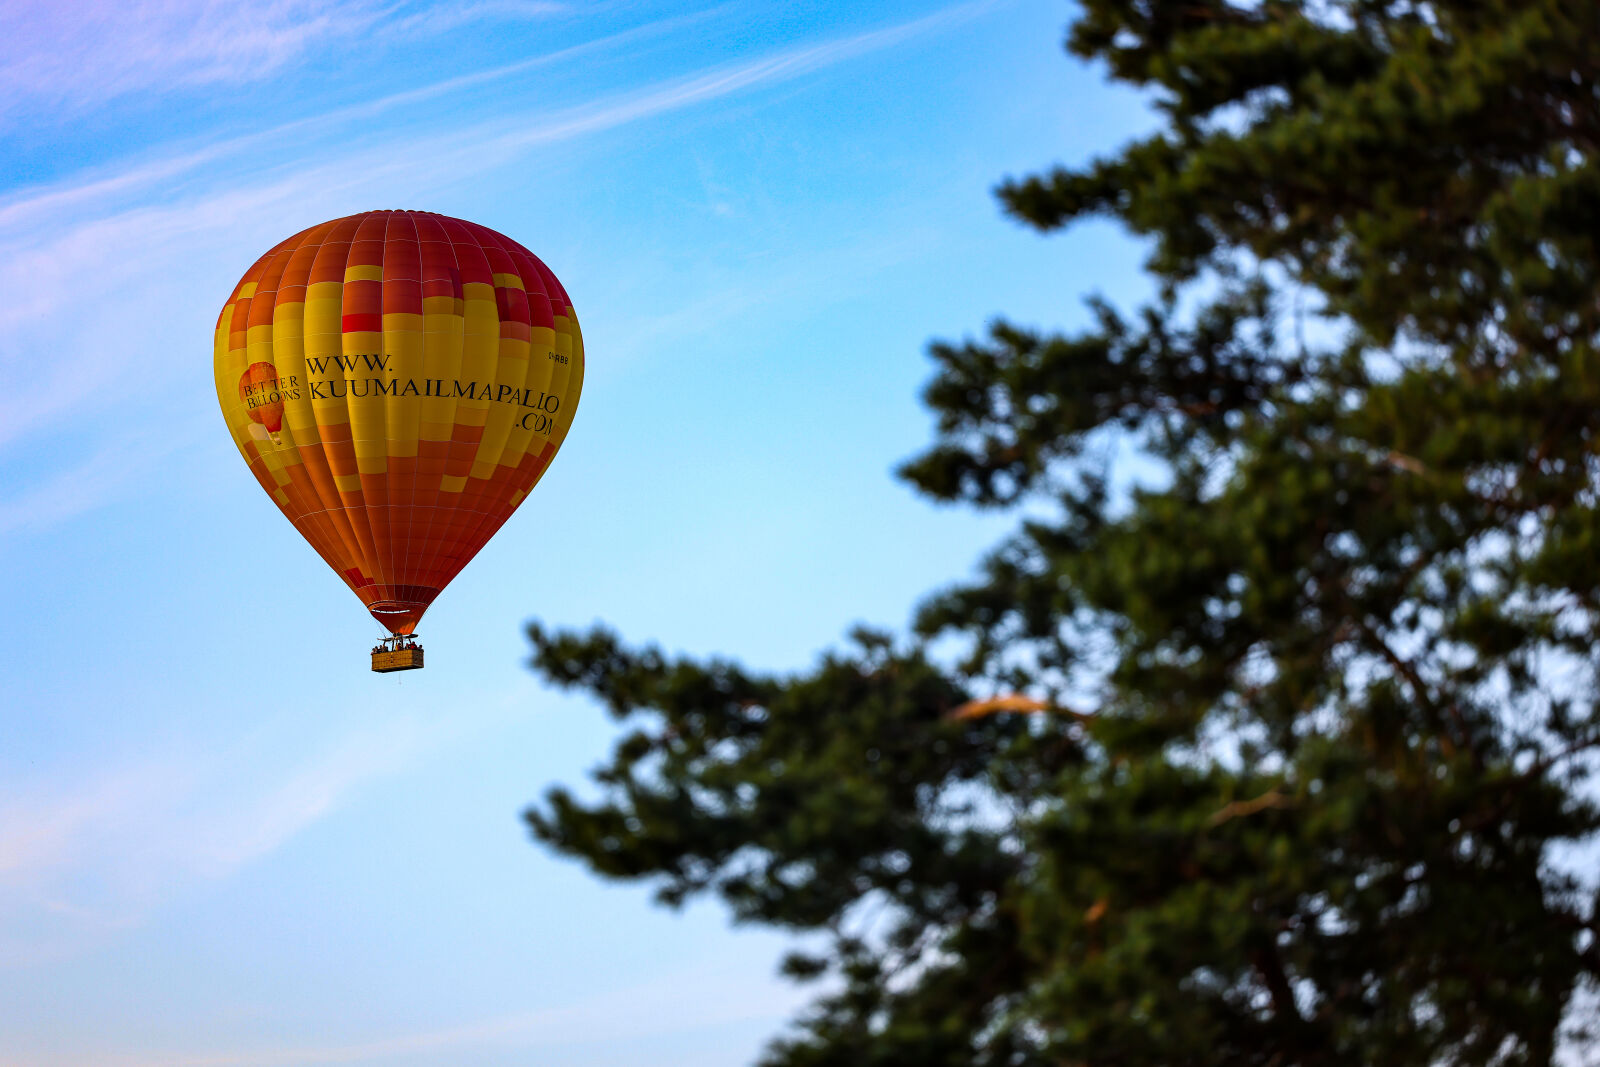 Canon EOS R5 sample photo. Hot air balloon photography